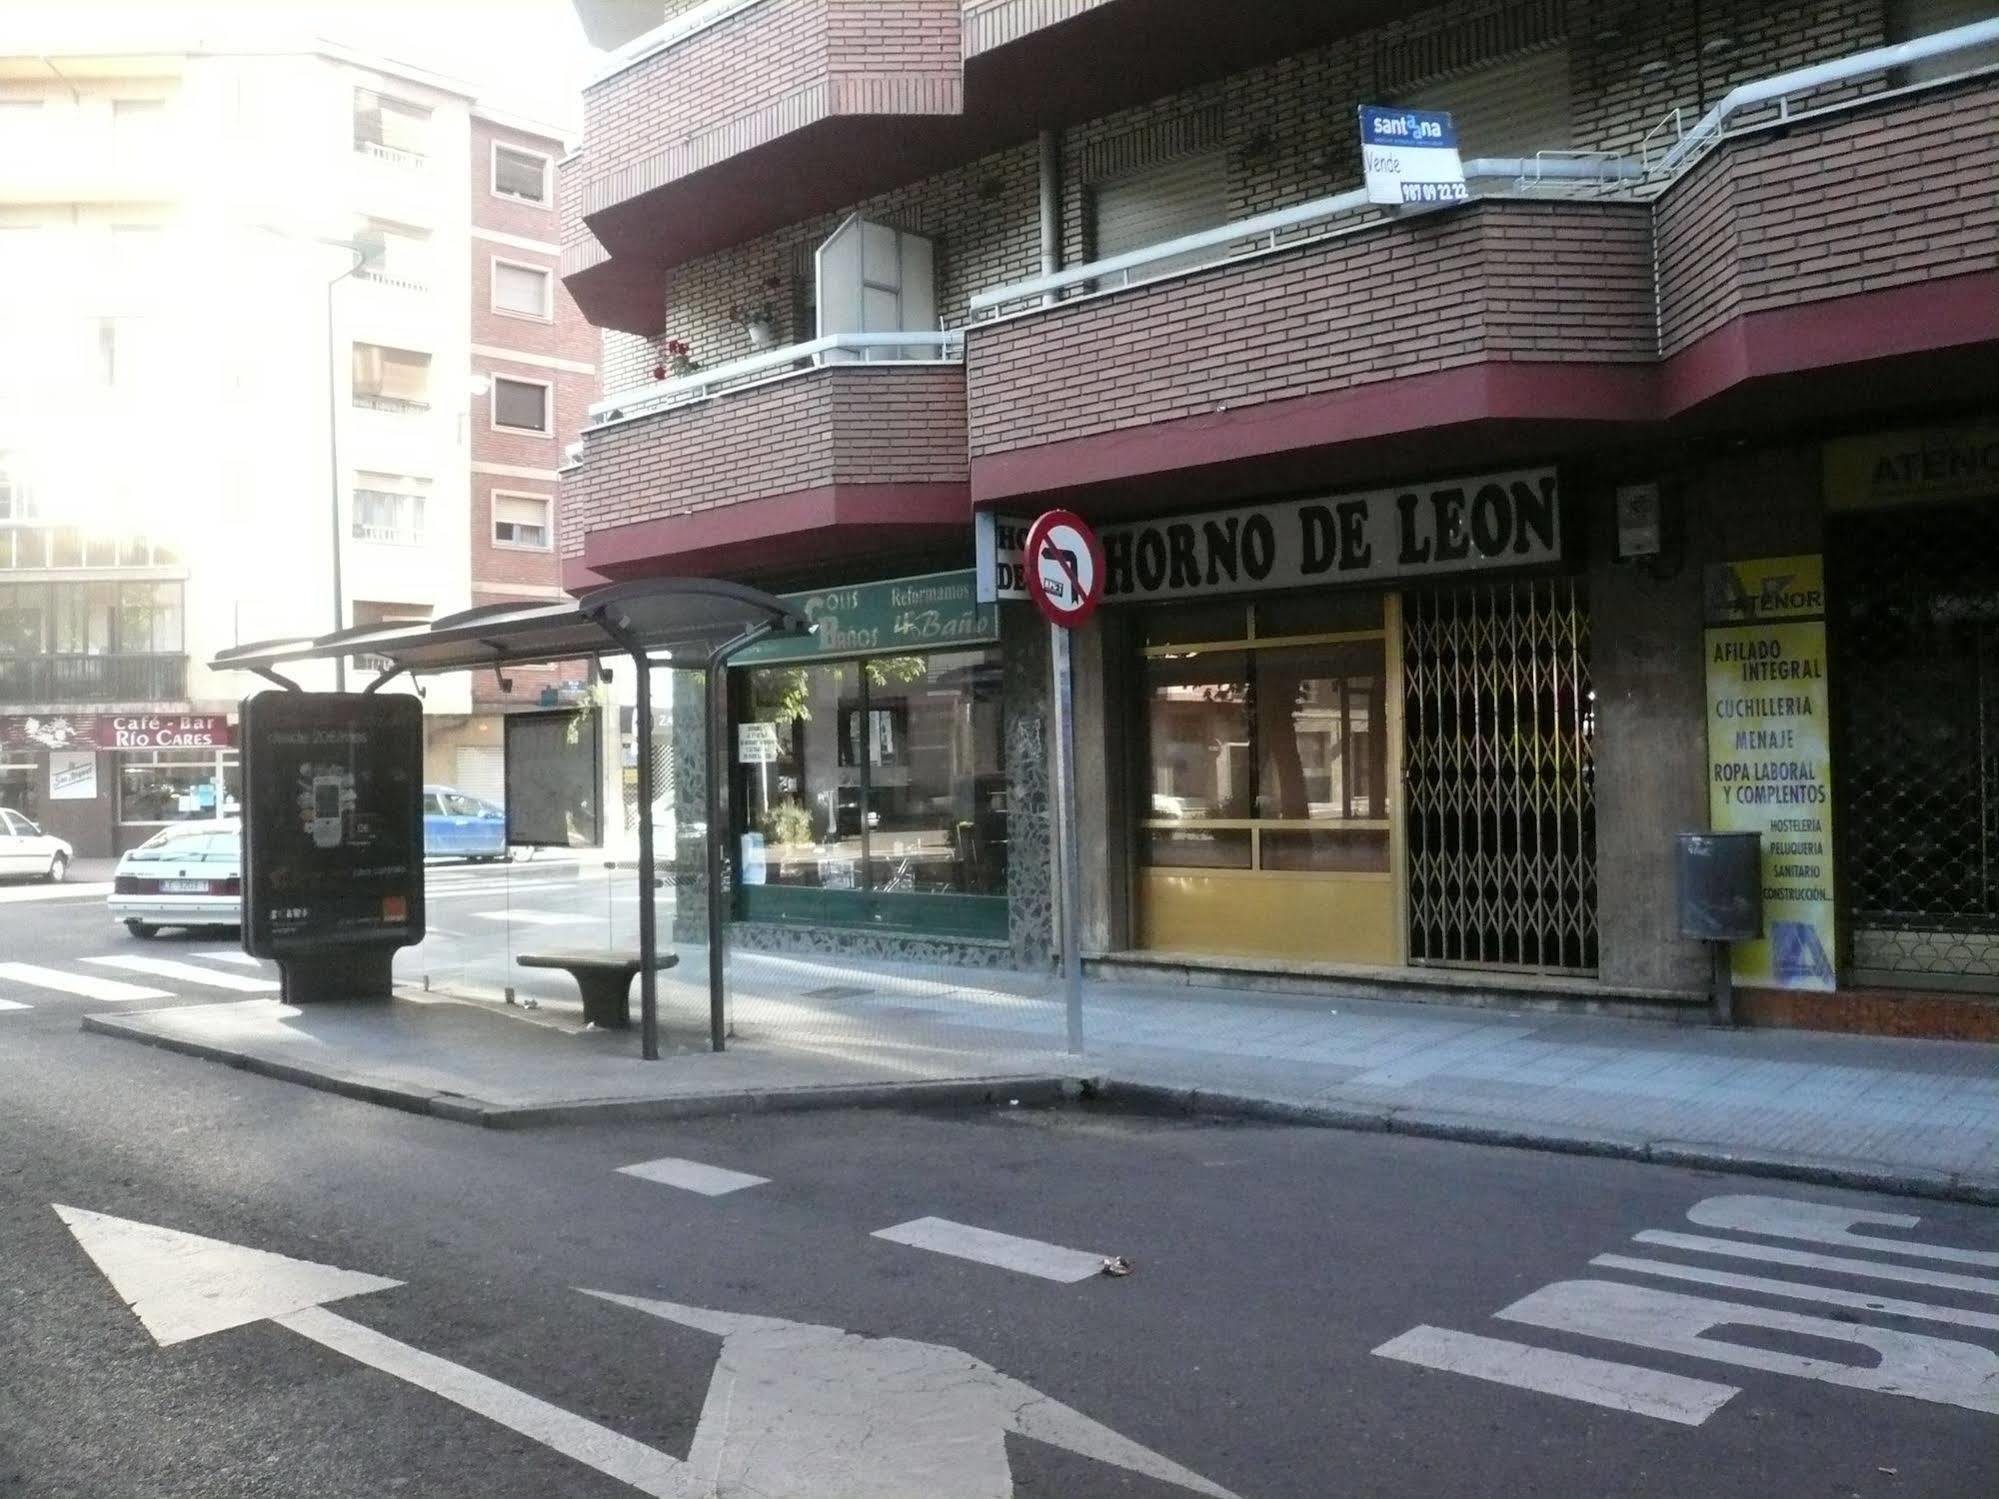 Apartamentos León Dış mekan fotoğraf